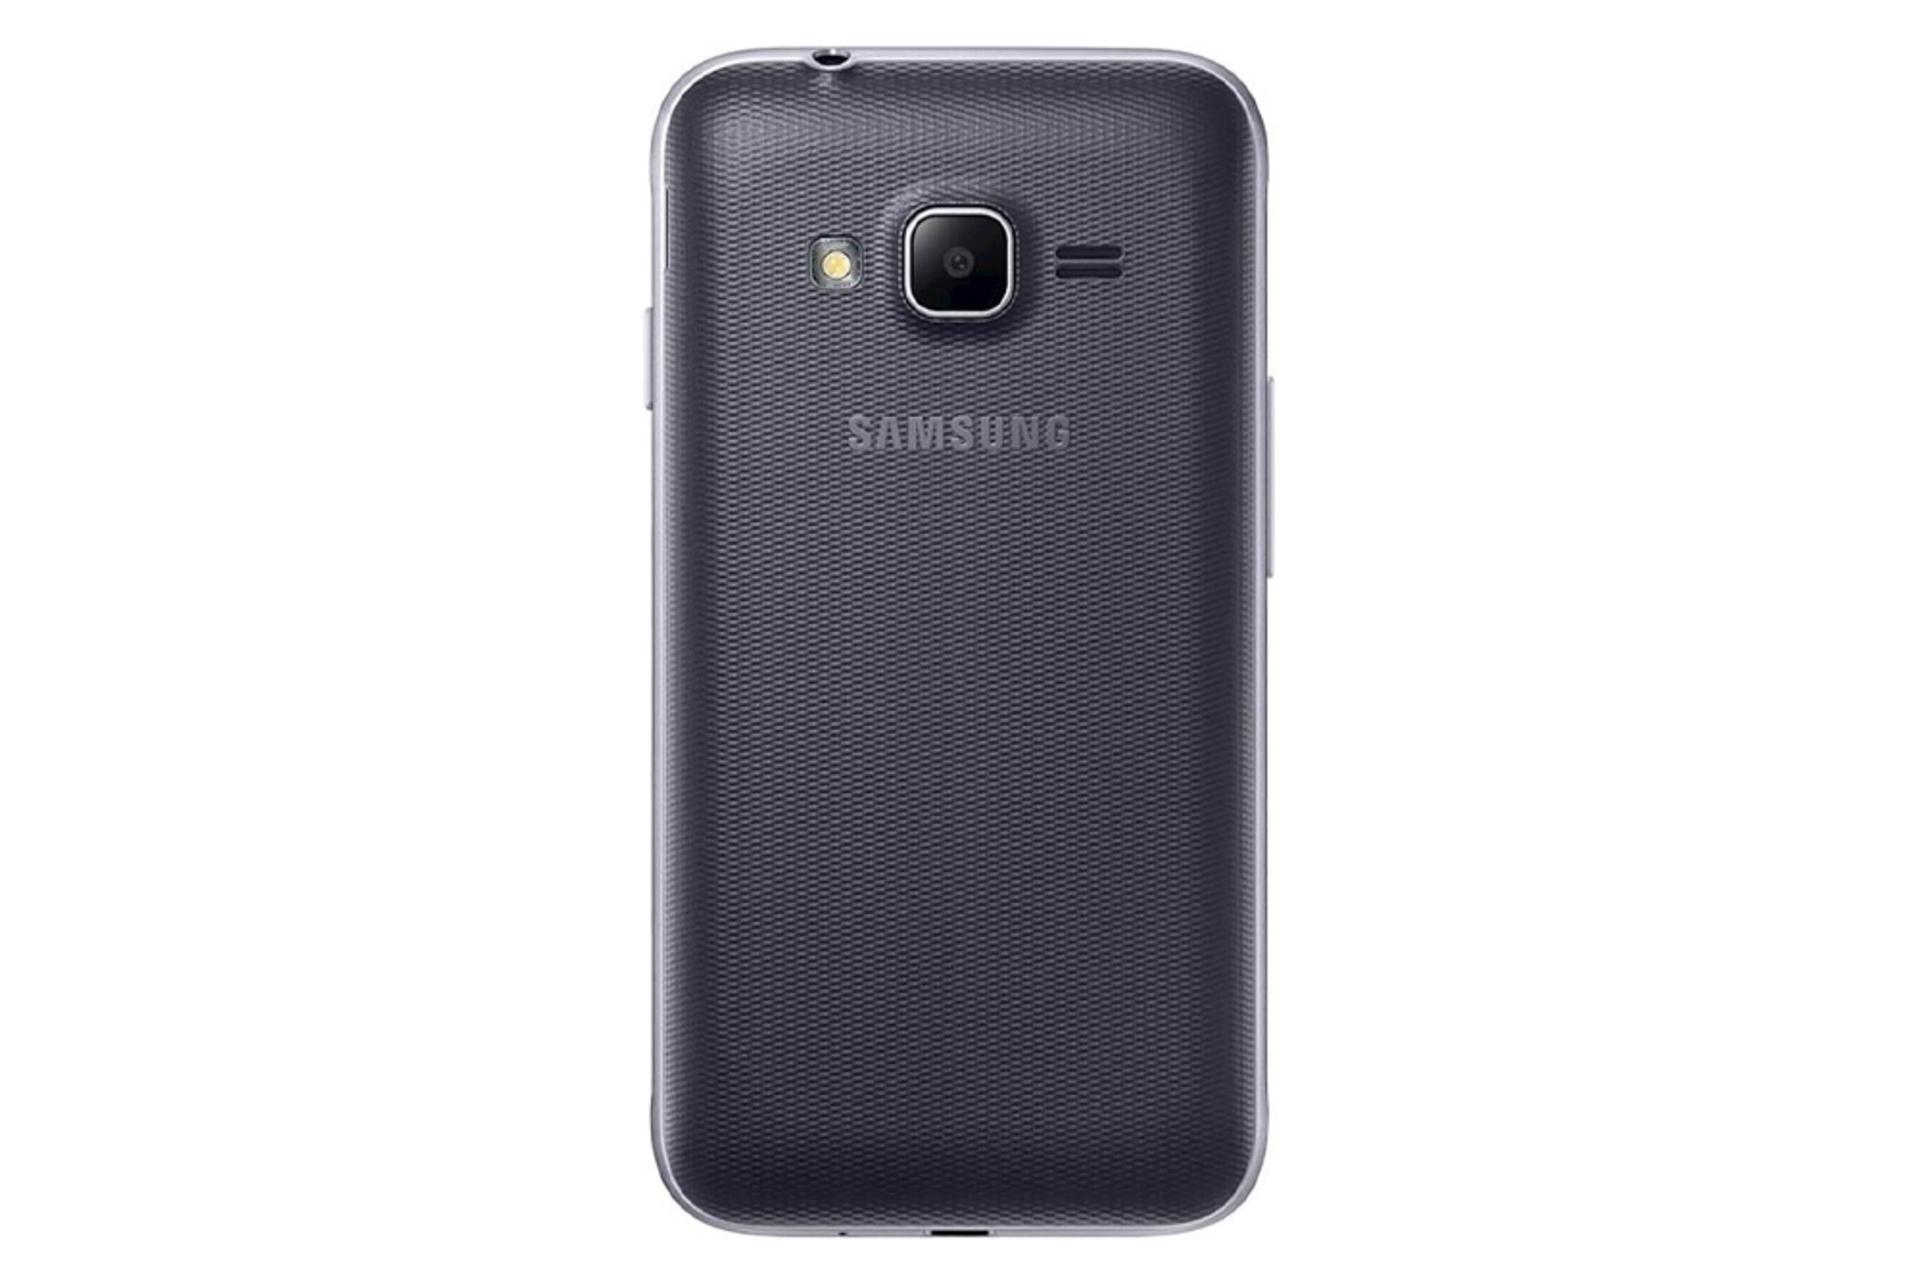 دوربین گلکسی J1 مینی پرایم سامسونگ Samsung Galaxy J1 mini prime